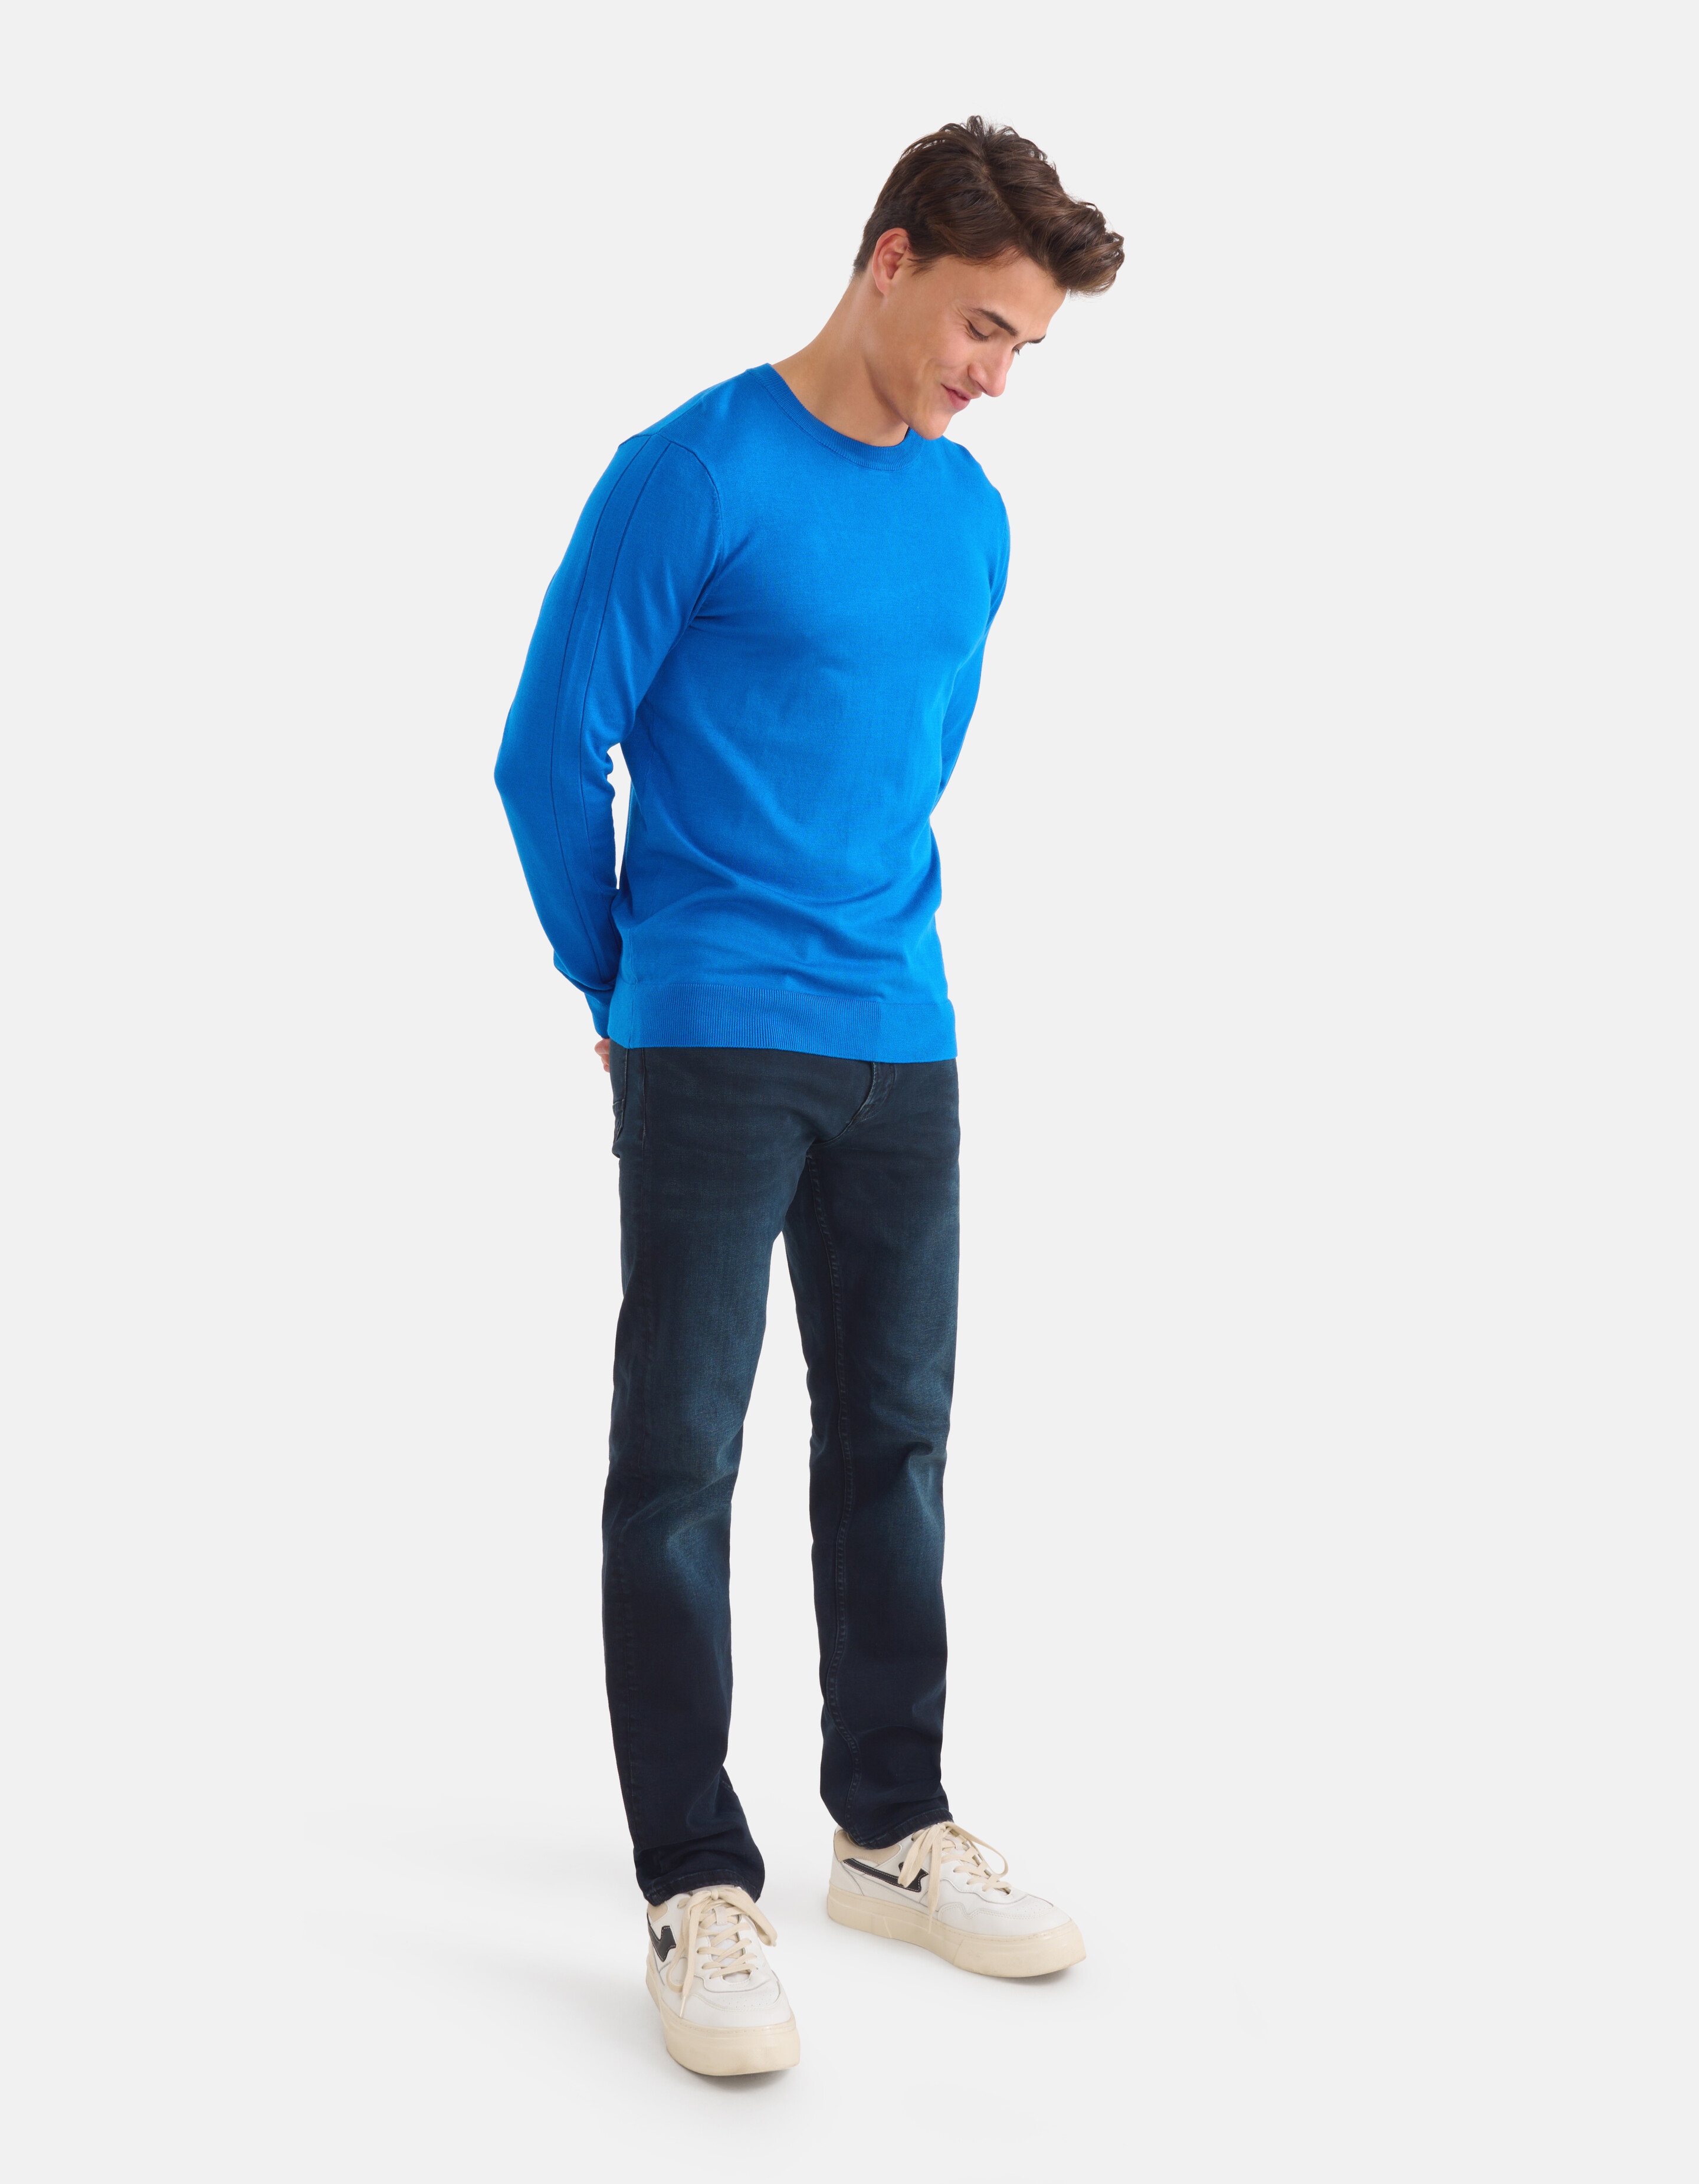 Straight Fit Jeans Blauw/Zwart L34 Refill